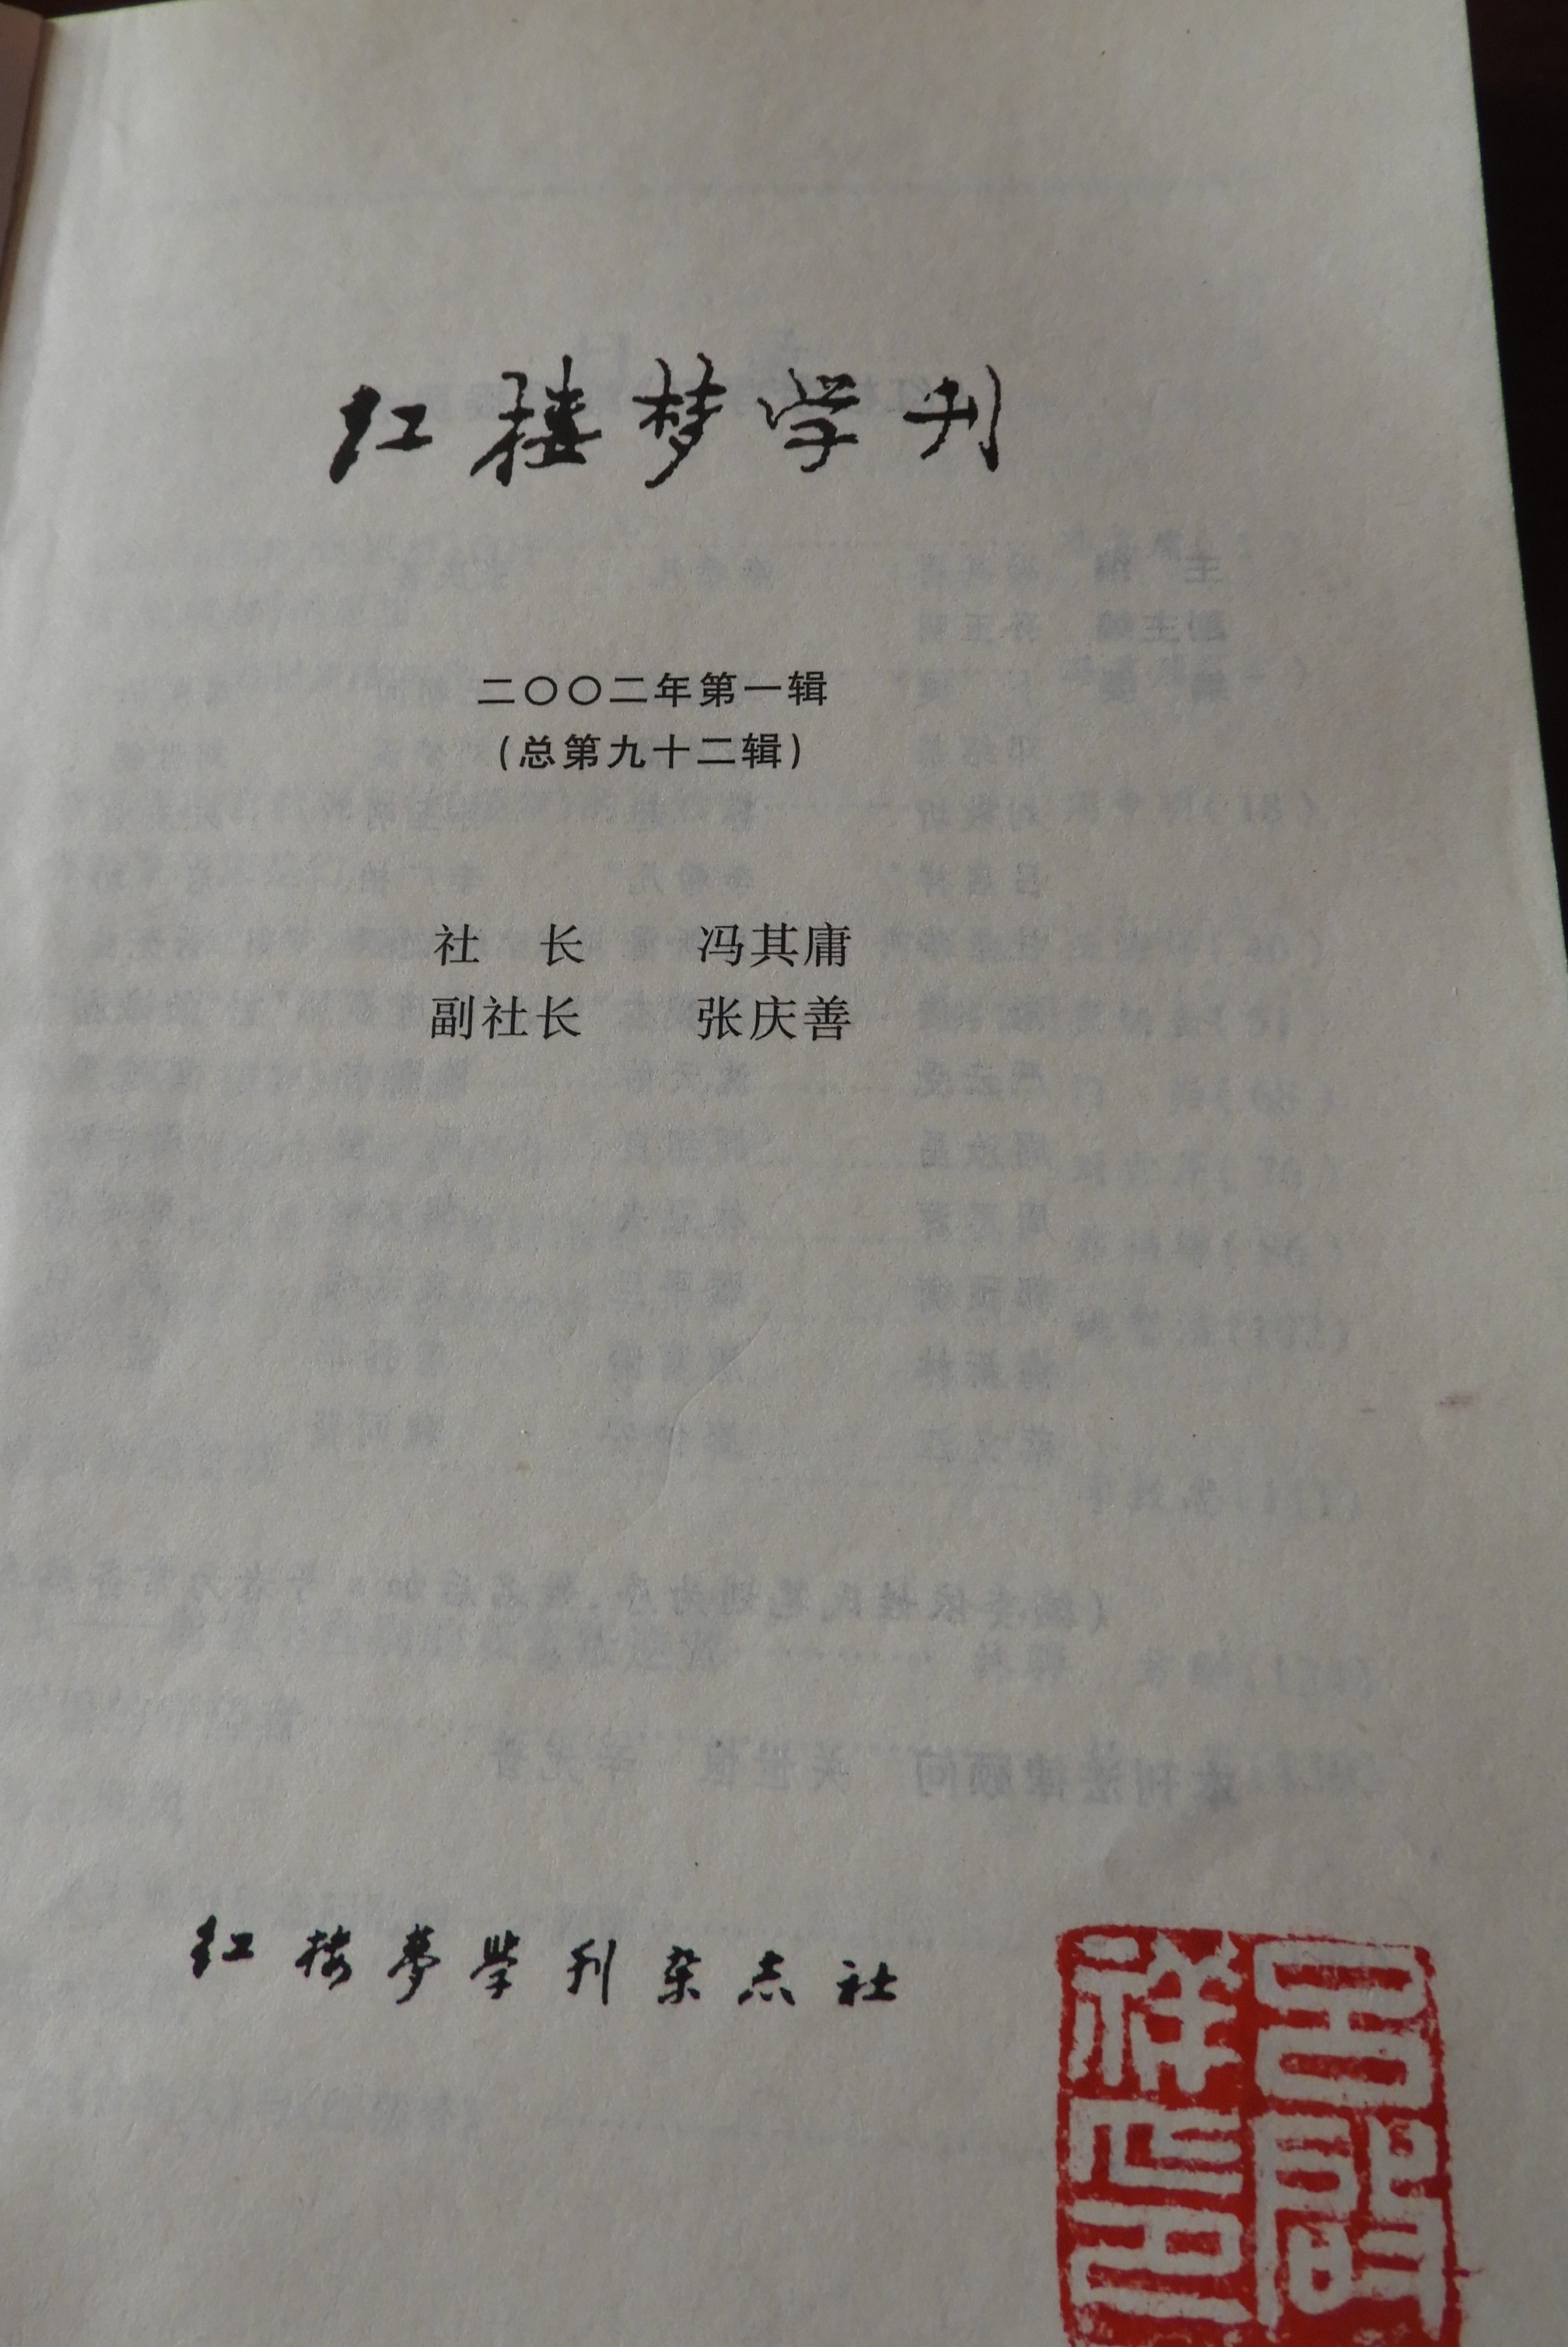 冯其庸李希凡张庆善主编红楼梦学刊2002年第一辑文化艺术出版社2002